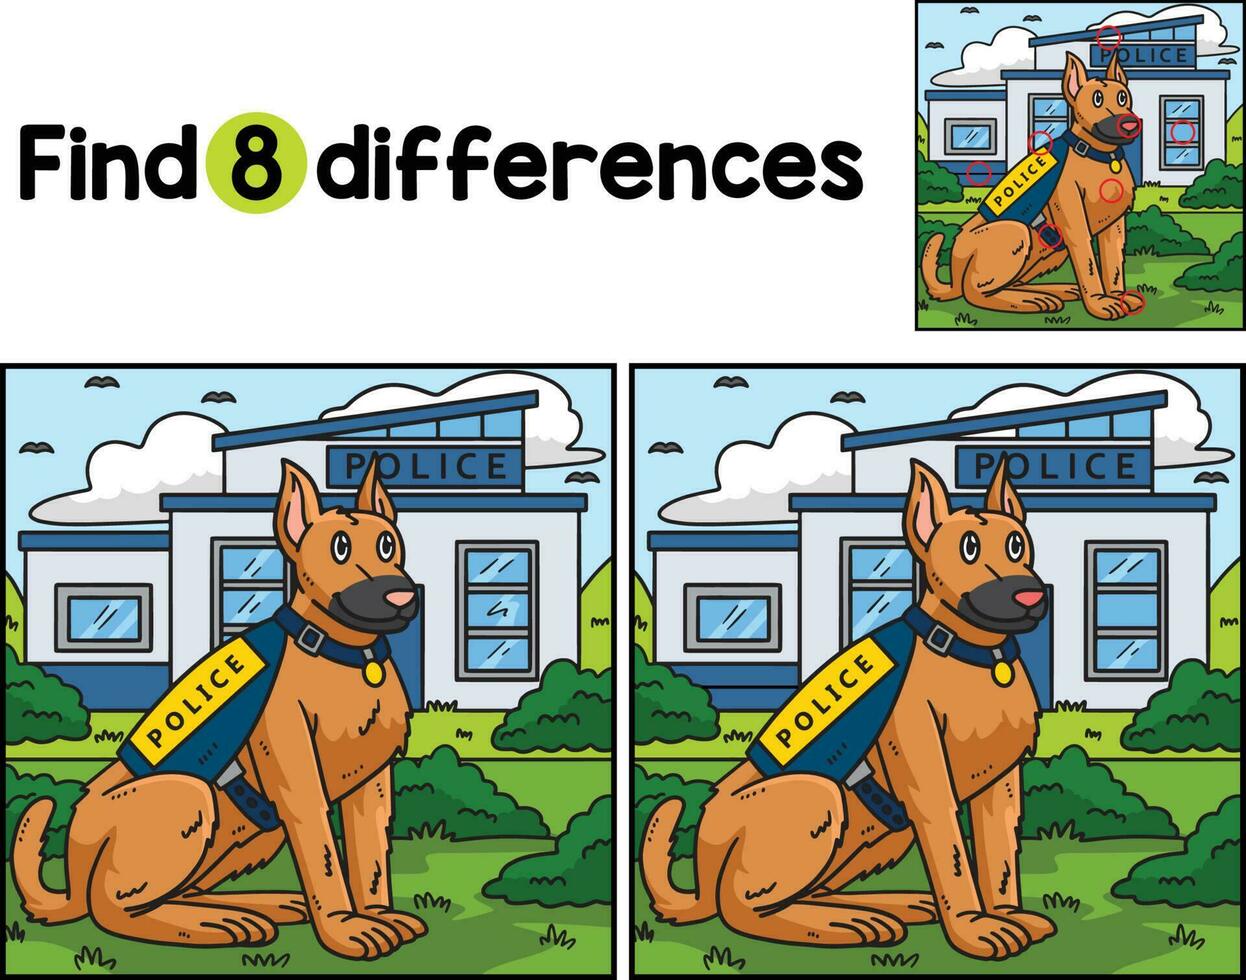 polizia cane trova il differenze vettore